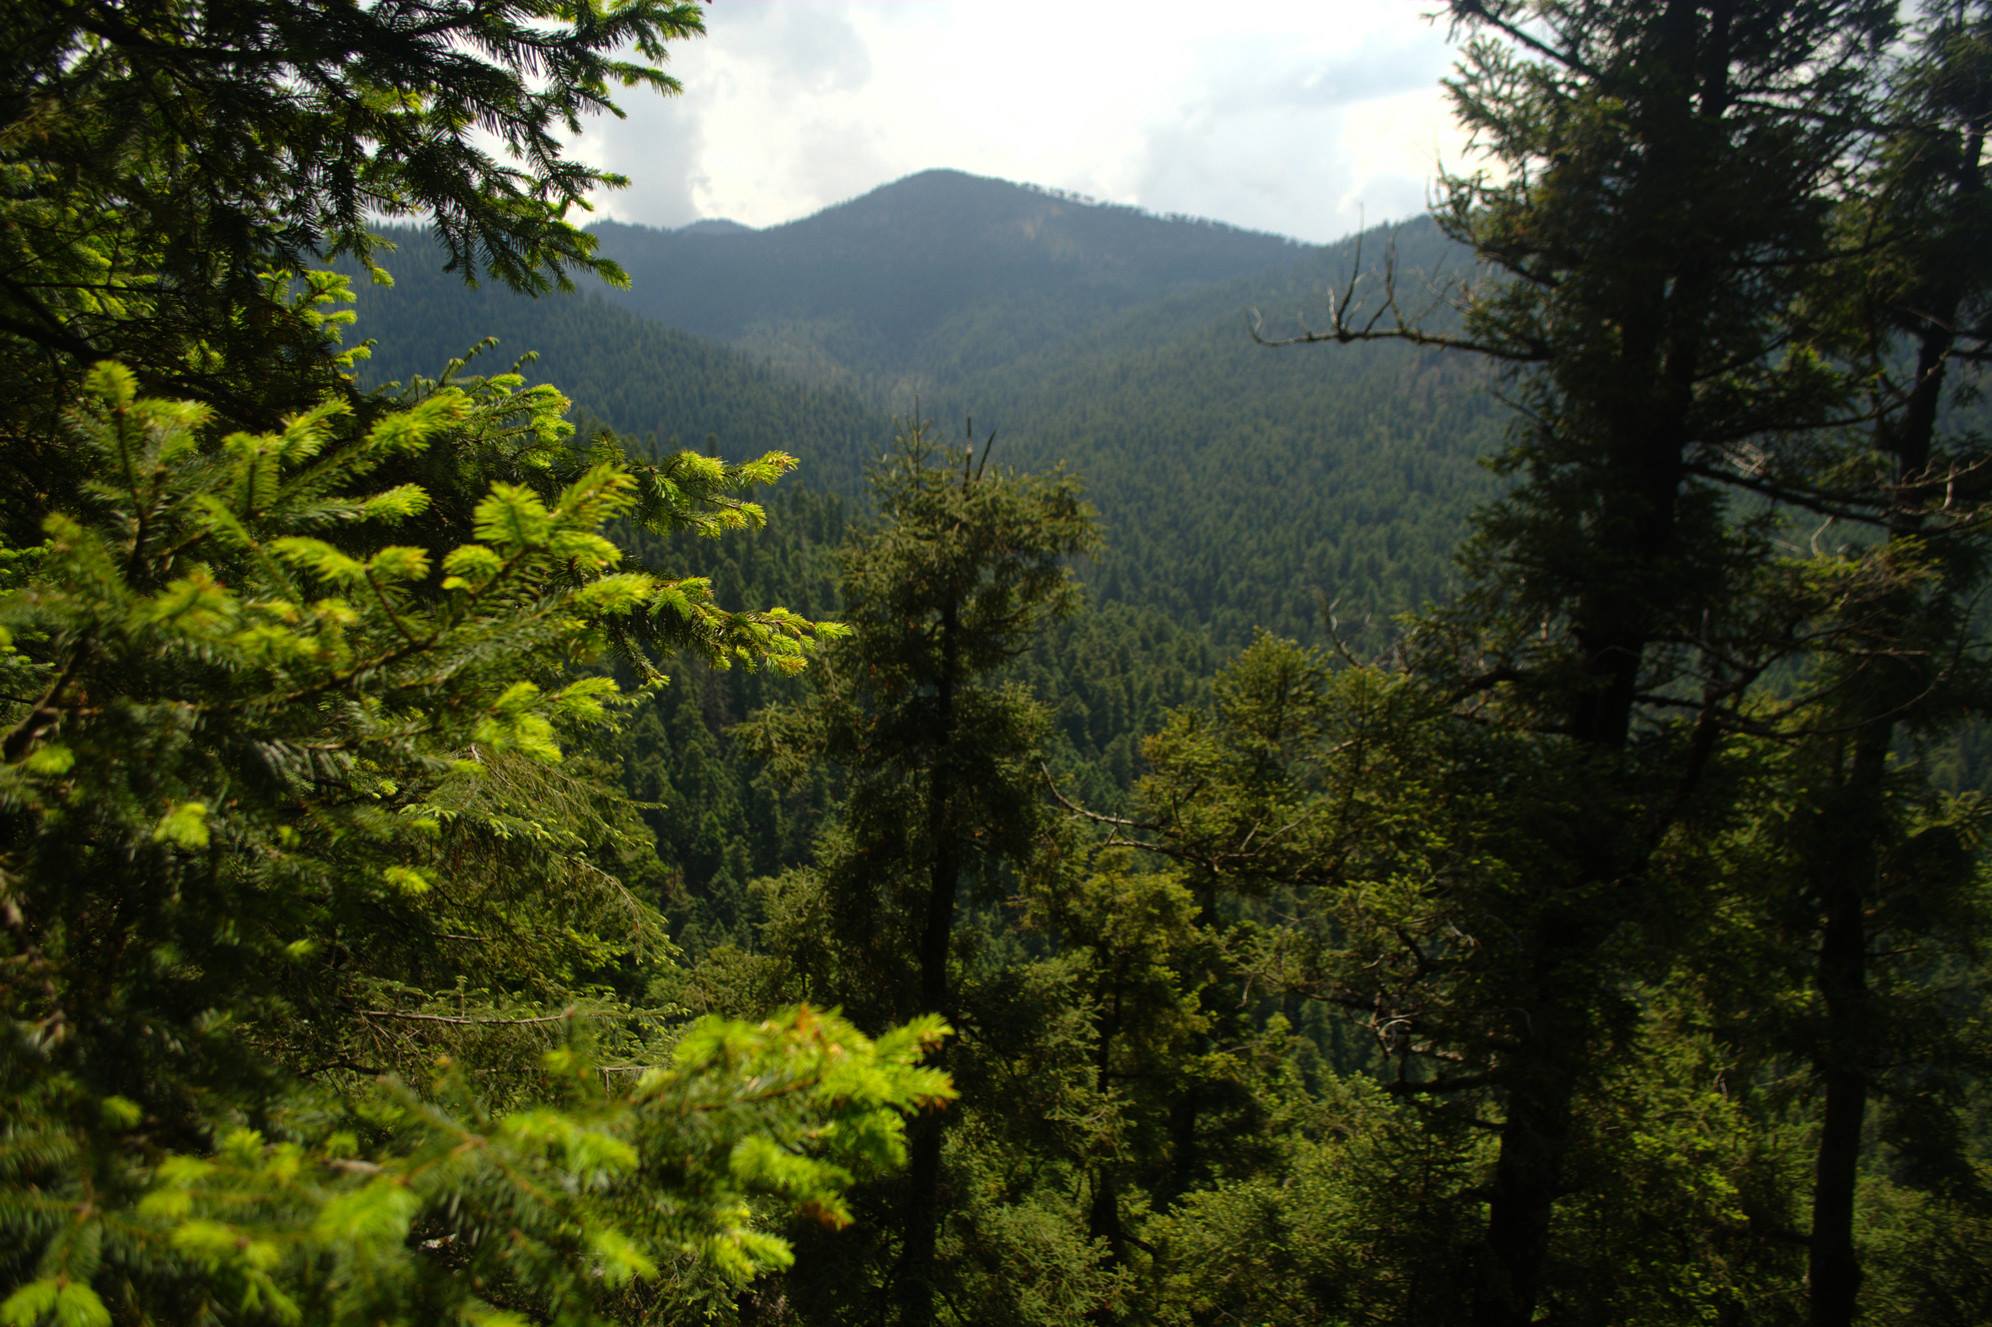 Los bosques aportan infinidad de servicios ambientales: producen oxígeno, capturan y almacenan carbono, captan agua, conservan el suelo, regulan el clima y son hábitat de infinidad de especies de flora y fauna.
